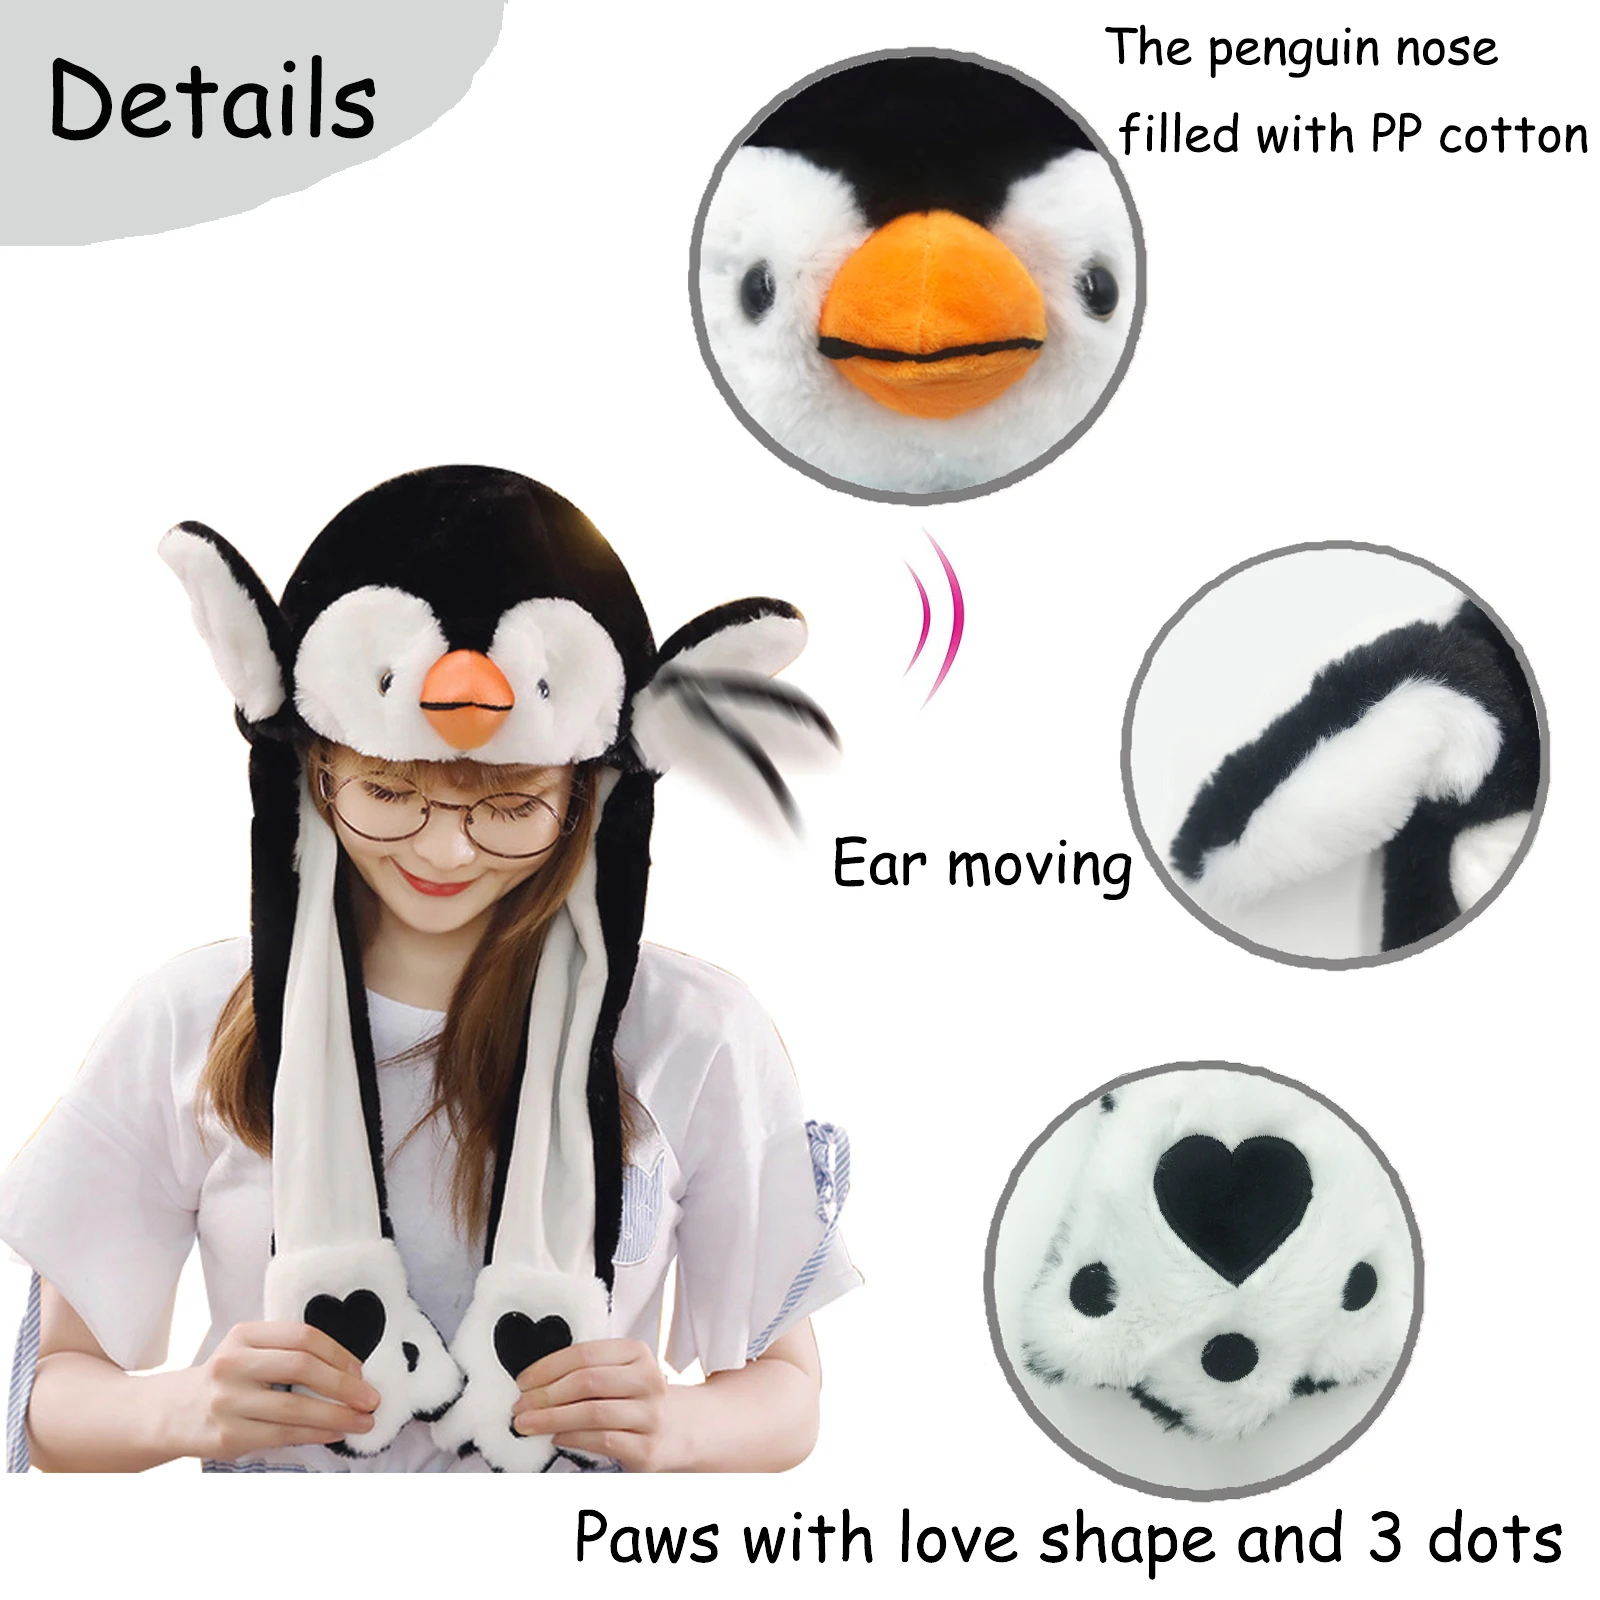 Pinguin Ohr Bewegen Hut Neuheit Tier Plüsch Spielzeug Hut Ohren Jumiping up Hut Cosplay Parteien Cartoon Hüte für kinder Erwachsene ohr Kappe